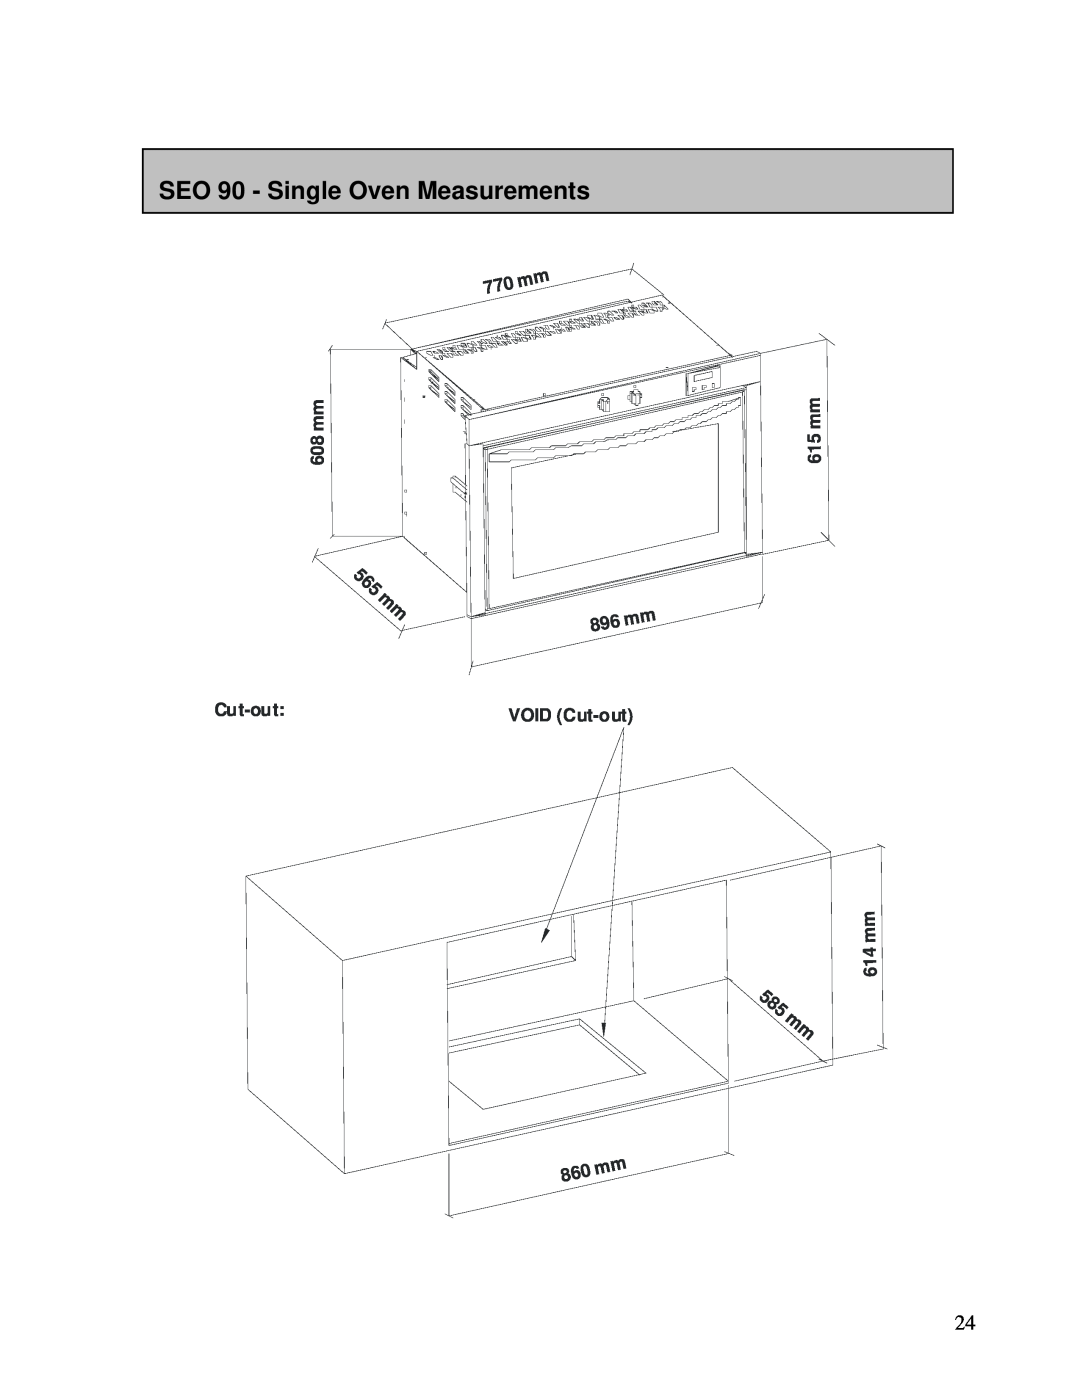 AEG DEO76, DE076 SEO 90 - Single Oven Measurements, 5 6 5 m m, 5 8 5 m m, 608 mm, VOID Cut-out, m m 5 1 m m 4 1 